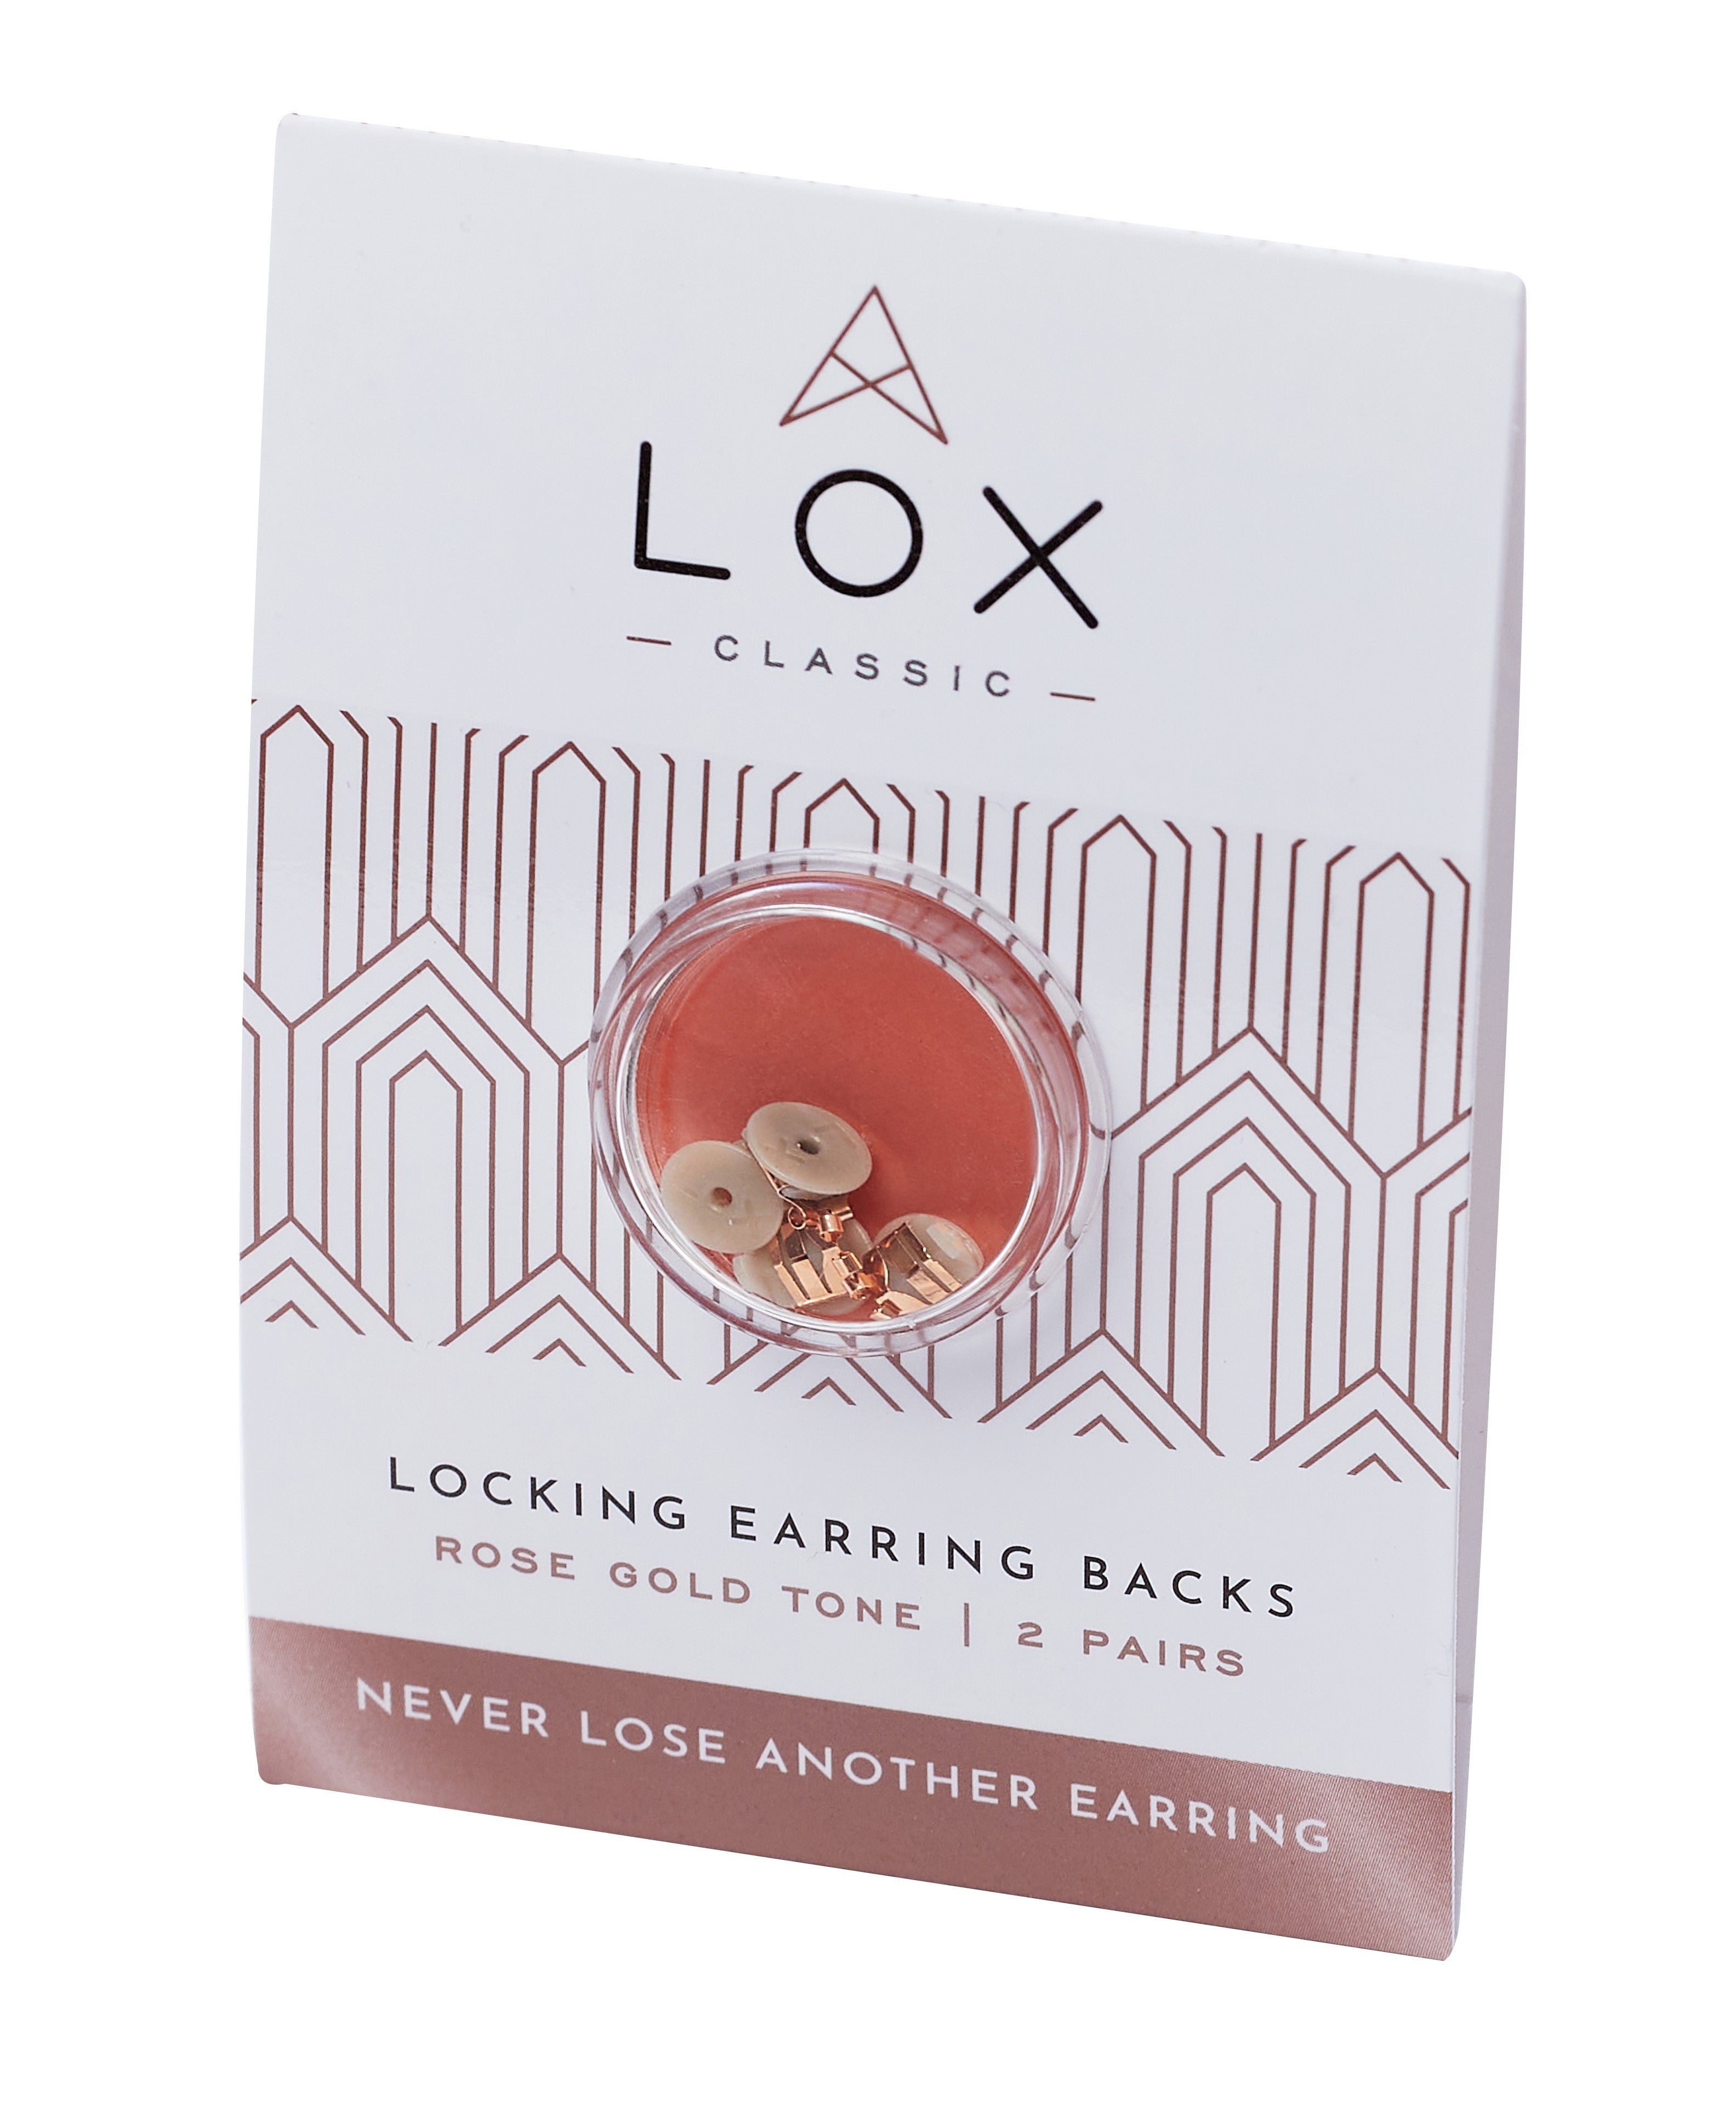 Lox Secure Earring Backs 